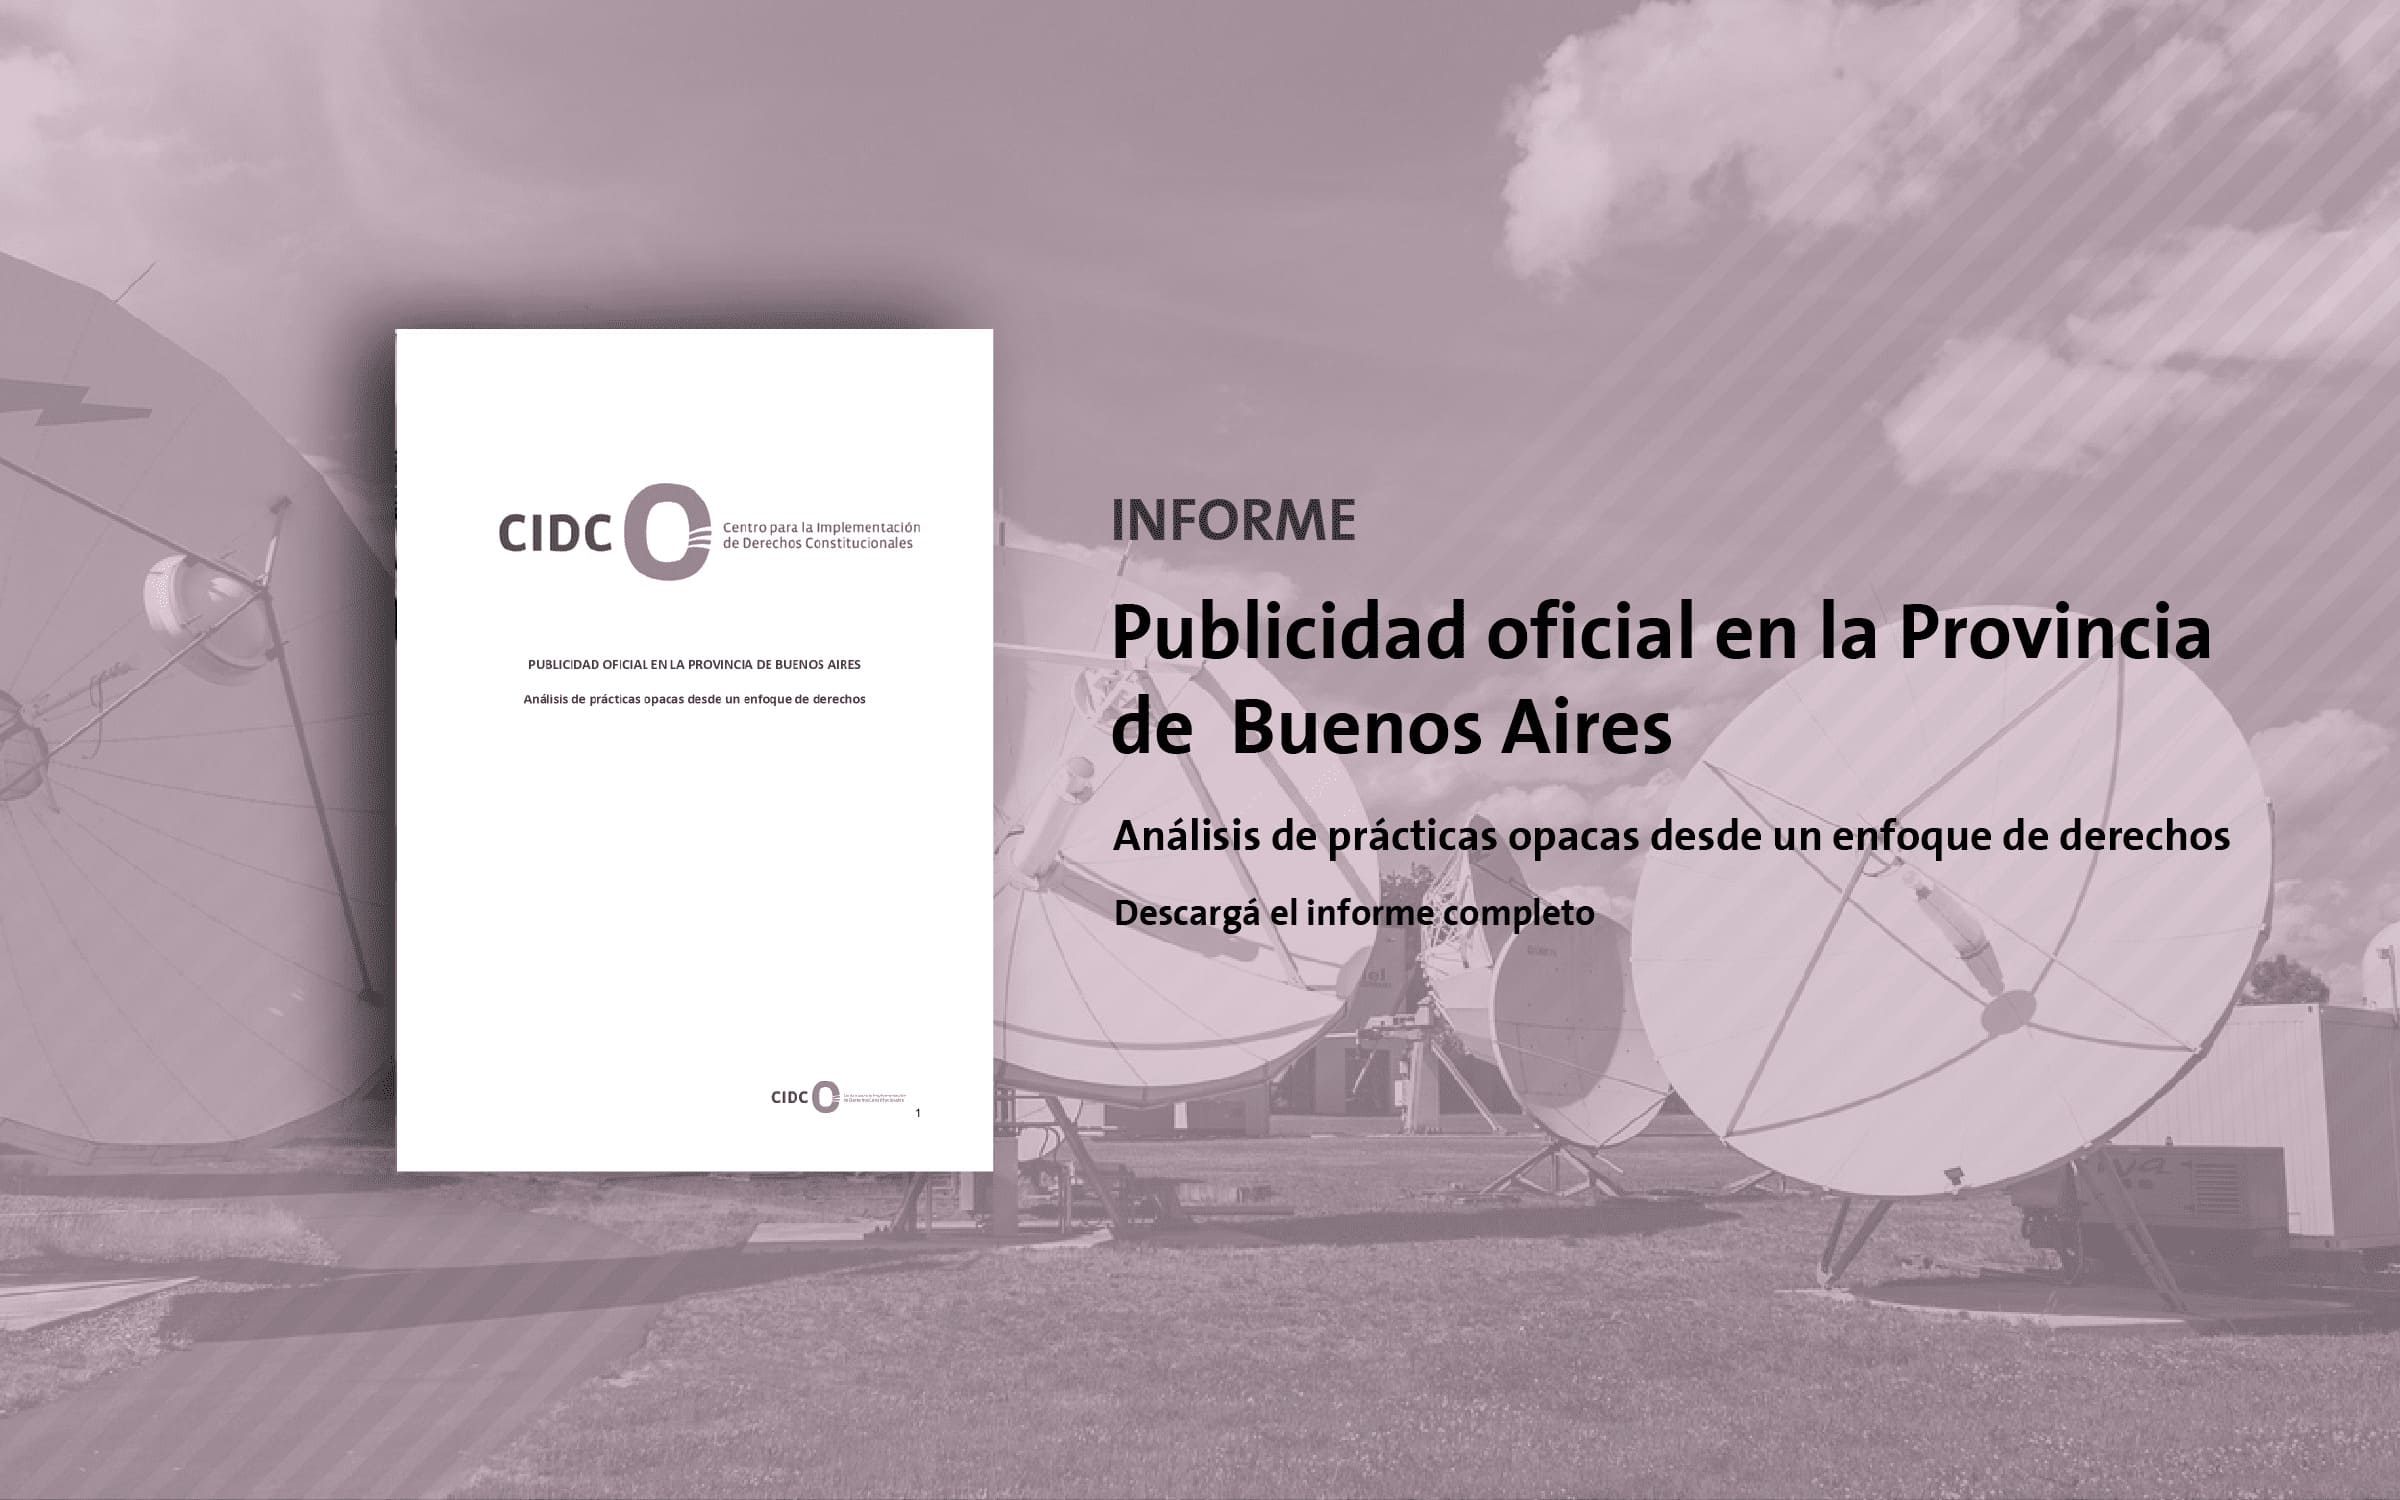 Informe sobre el gasto público en Publicidad Oficial en la Provincia de Buenos Aires